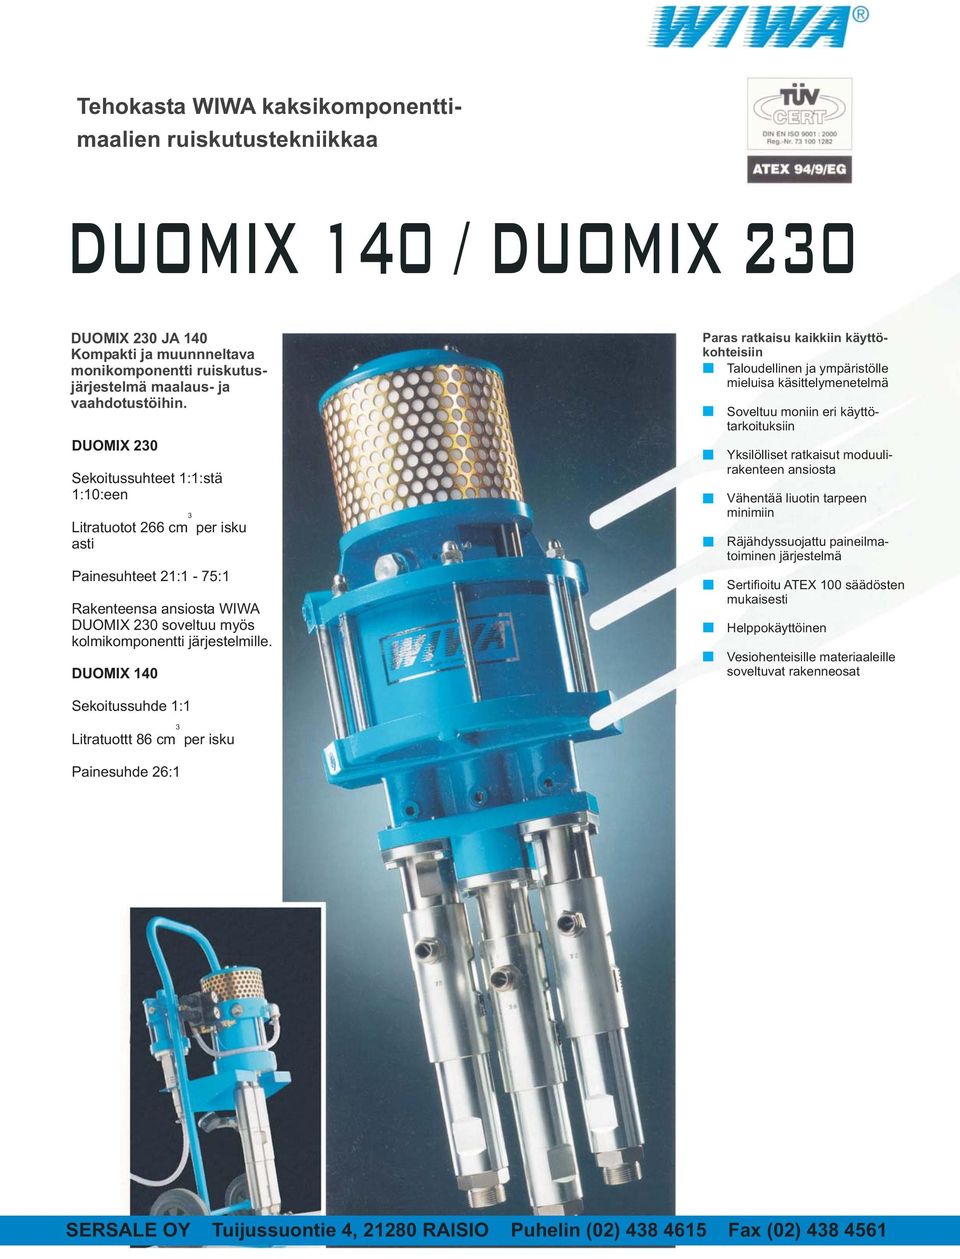 DUOMIX 140 3 Paras ratkaisu kaikkiin käyttökohteisiin Taloudellinen ja ympäristölle mieluisa käsittelymenetelmä Soveltuu moniin eri käyttötarkoituksiin Yksilölliset ratkaisut moduulirakenteen